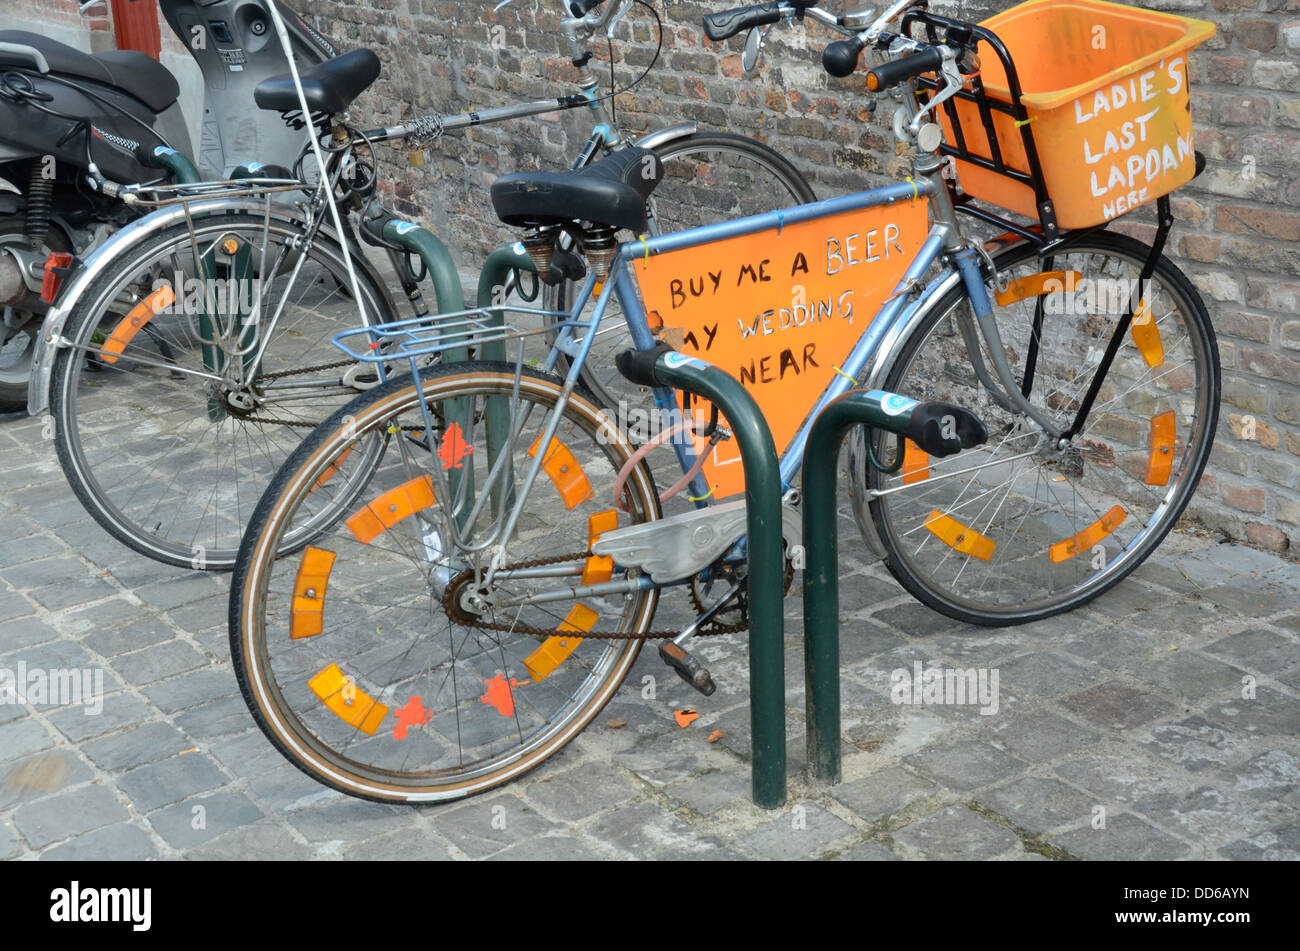 Fahrrad Werbung Veranstaltungsort für Stag und Hen Nächte, Brügge, Belgien  Stockfotografie - Alamy